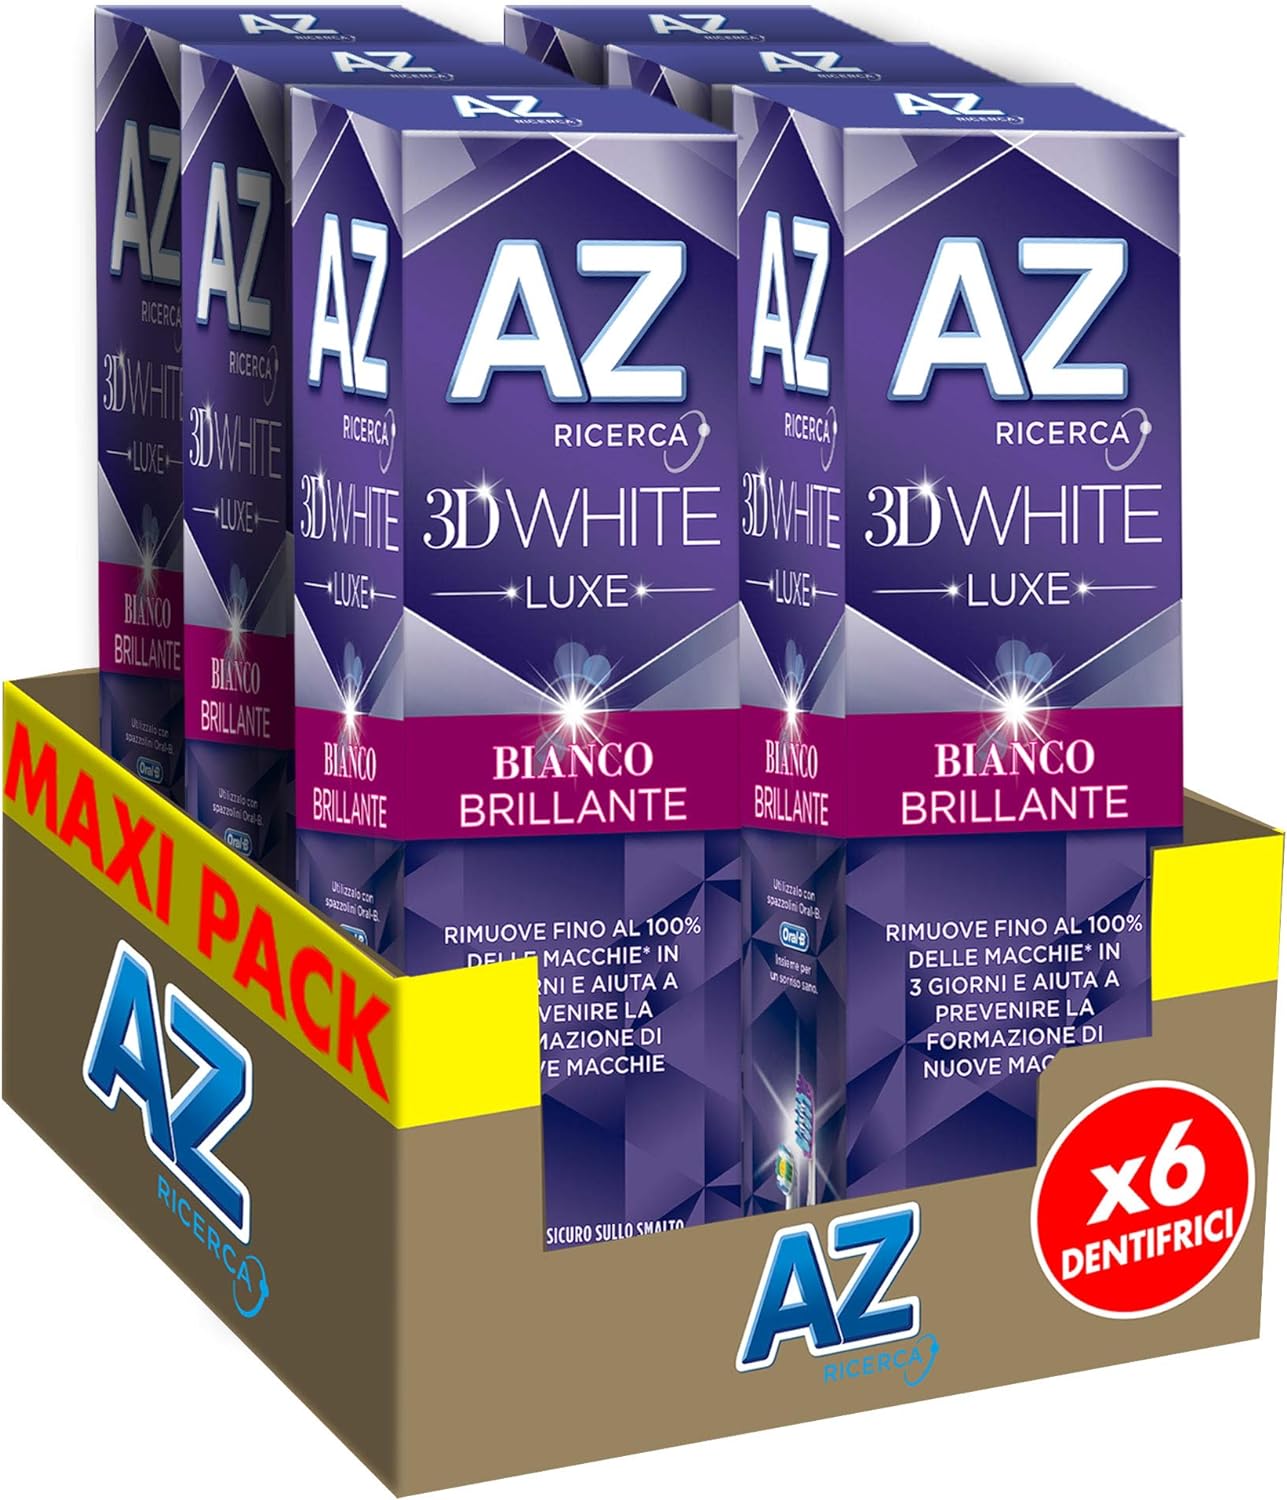 Dentifricio AZ 3D White Luxe con Azione Sbiancante Maxi Formato da 6pz x 75ml.